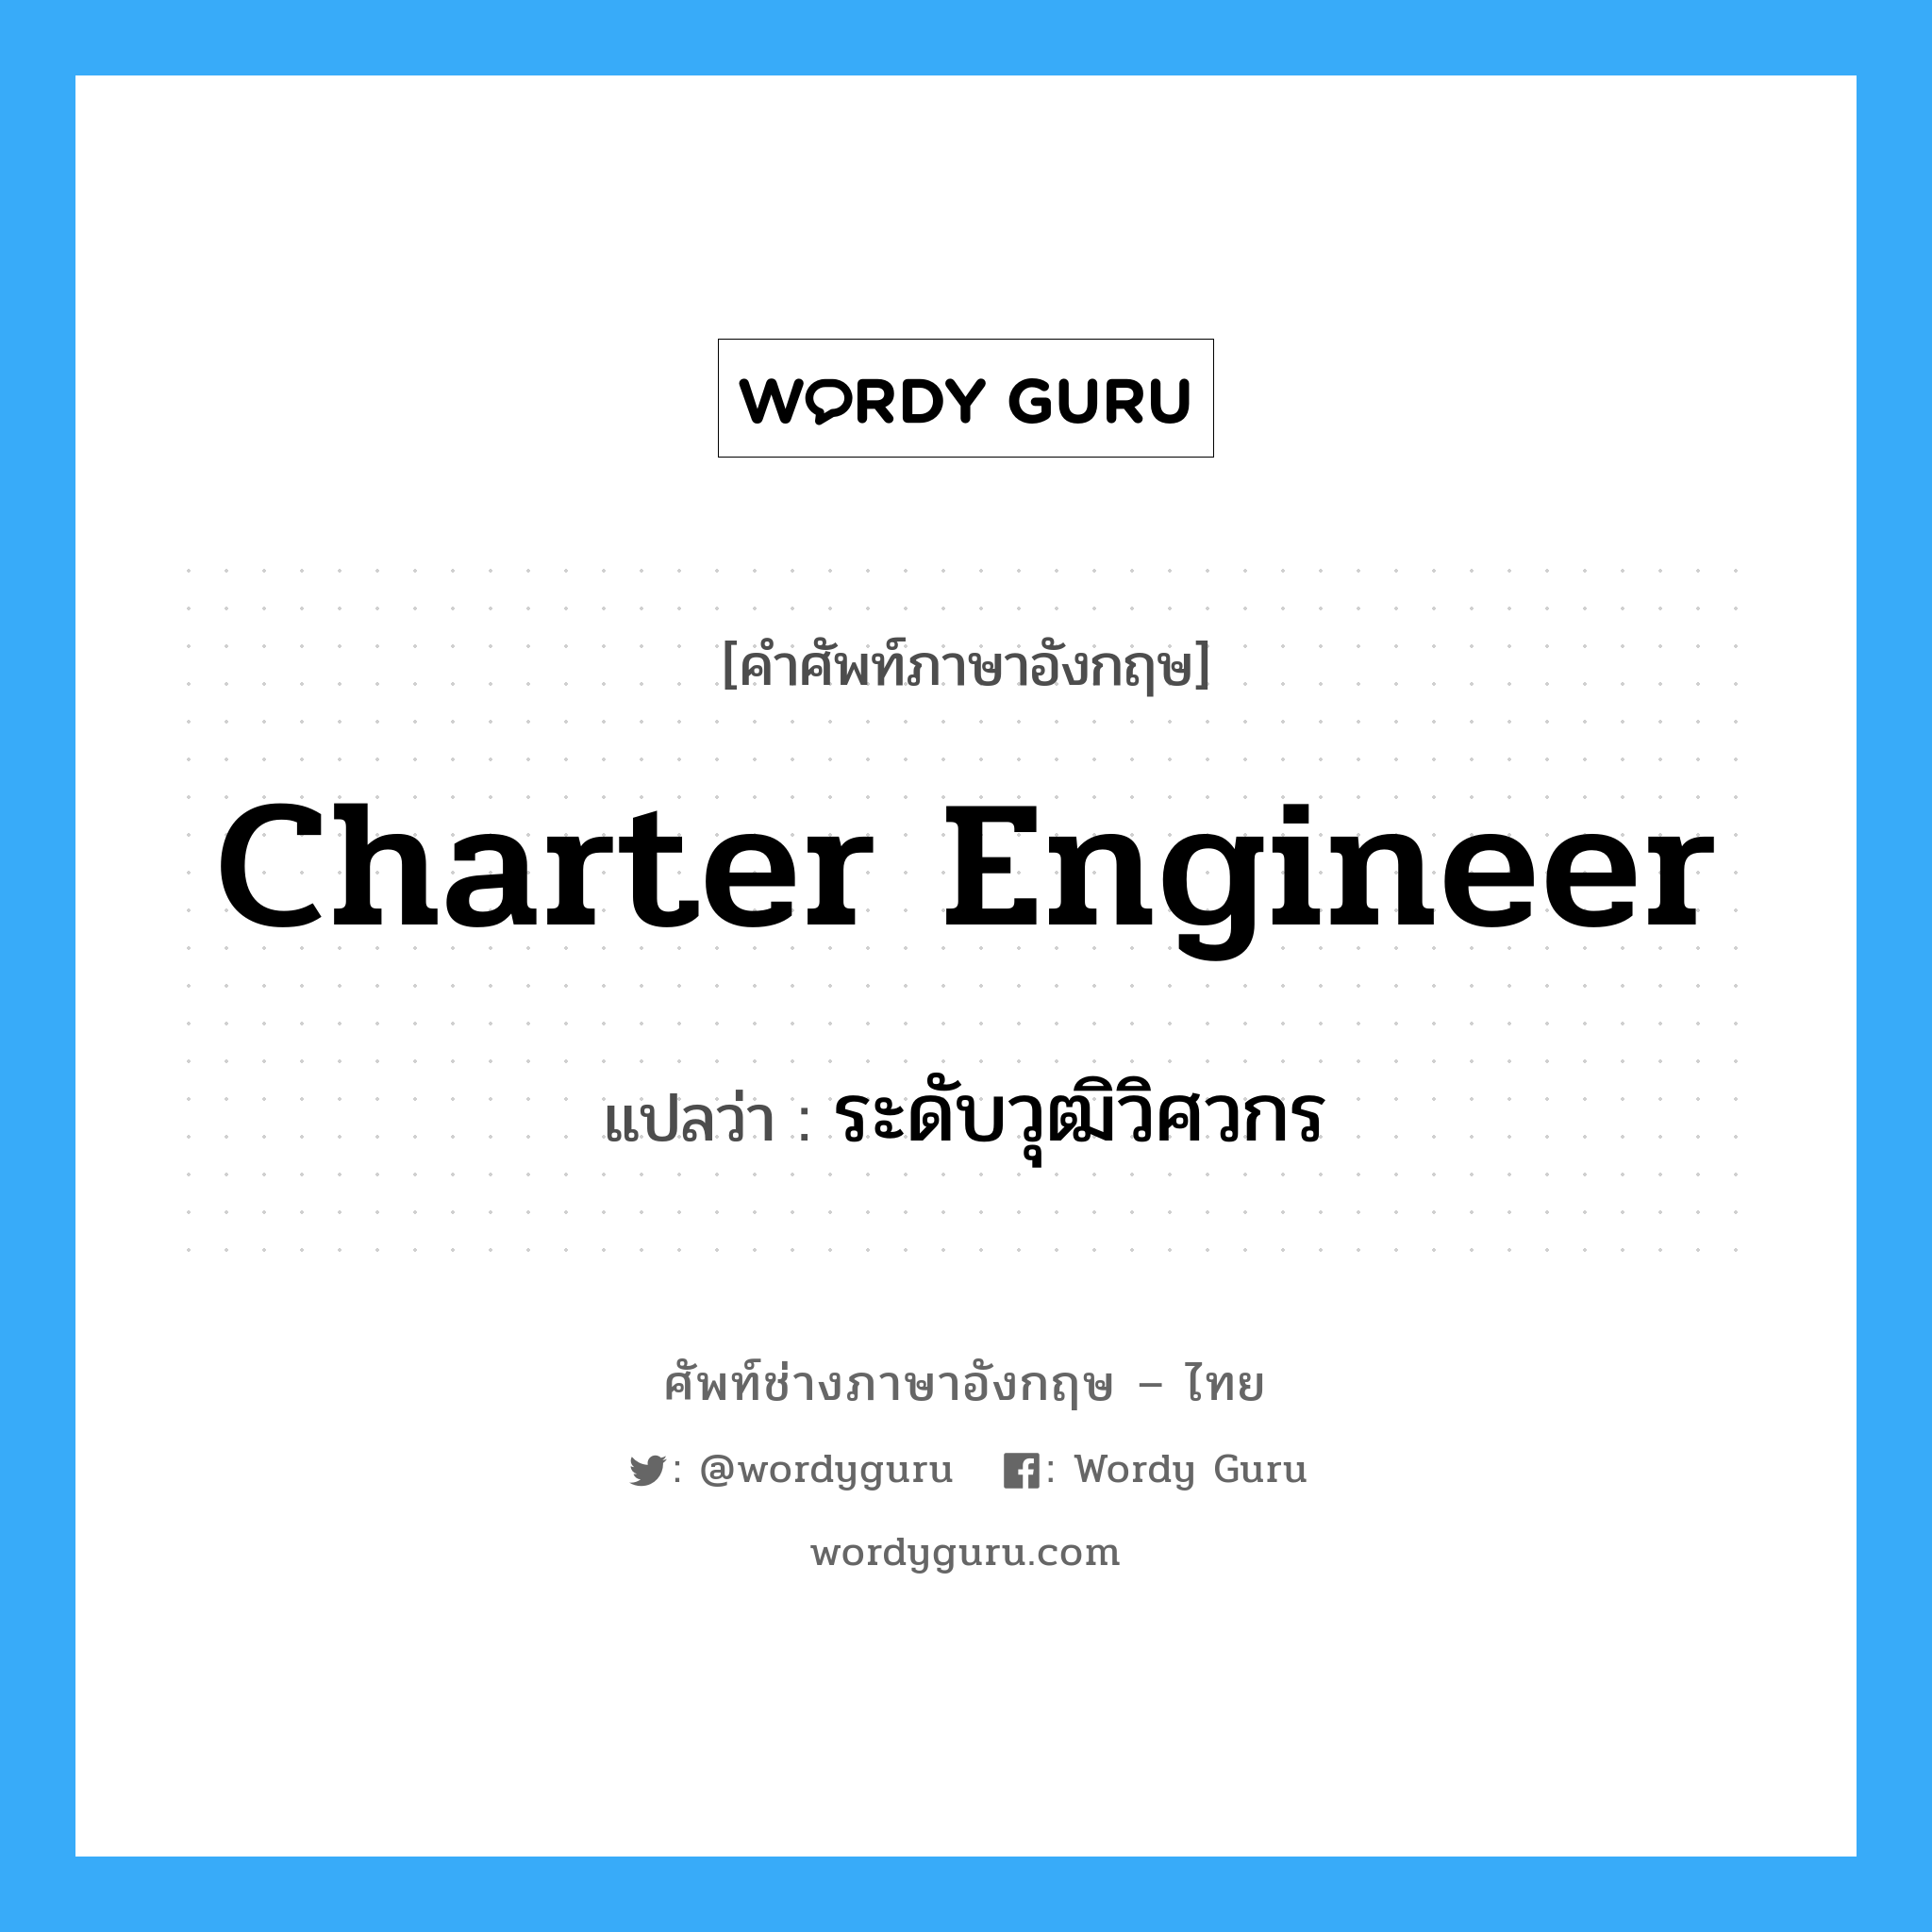 ระดับวุฒิวิศวกร ภาษาอังกฤษ?, คำศัพท์ช่างภาษาอังกฤษ - ไทย ระดับวุฒิวิศวกร คำศัพท์ภาษาอังกฤษ ระดับวุฒิวิศวกร แปลว่า Charter Engineer